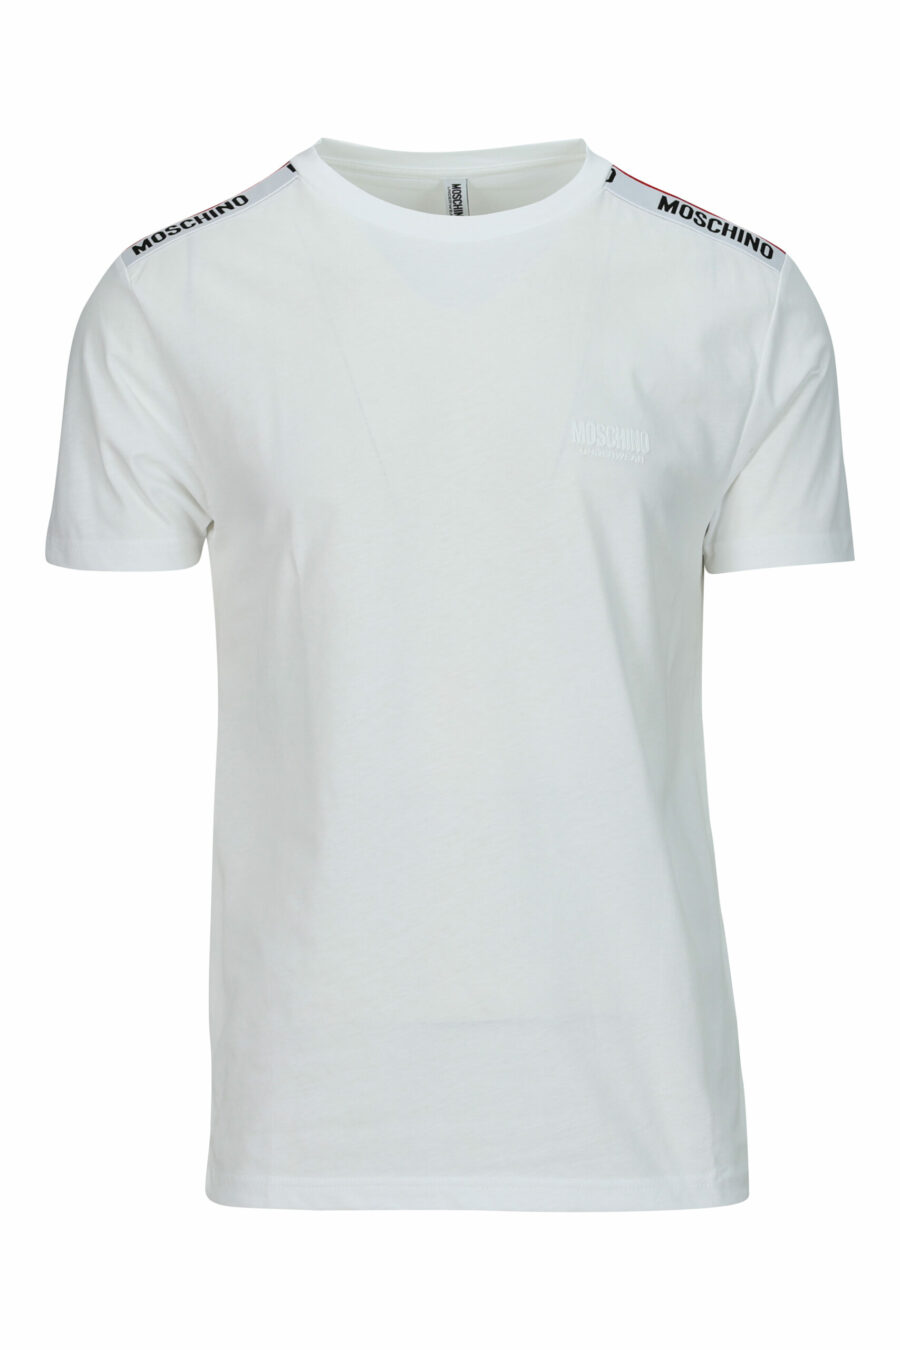 Camiseta blanca con logo negro con detalle rojo en cinta en hombros - 667113604213 scaled